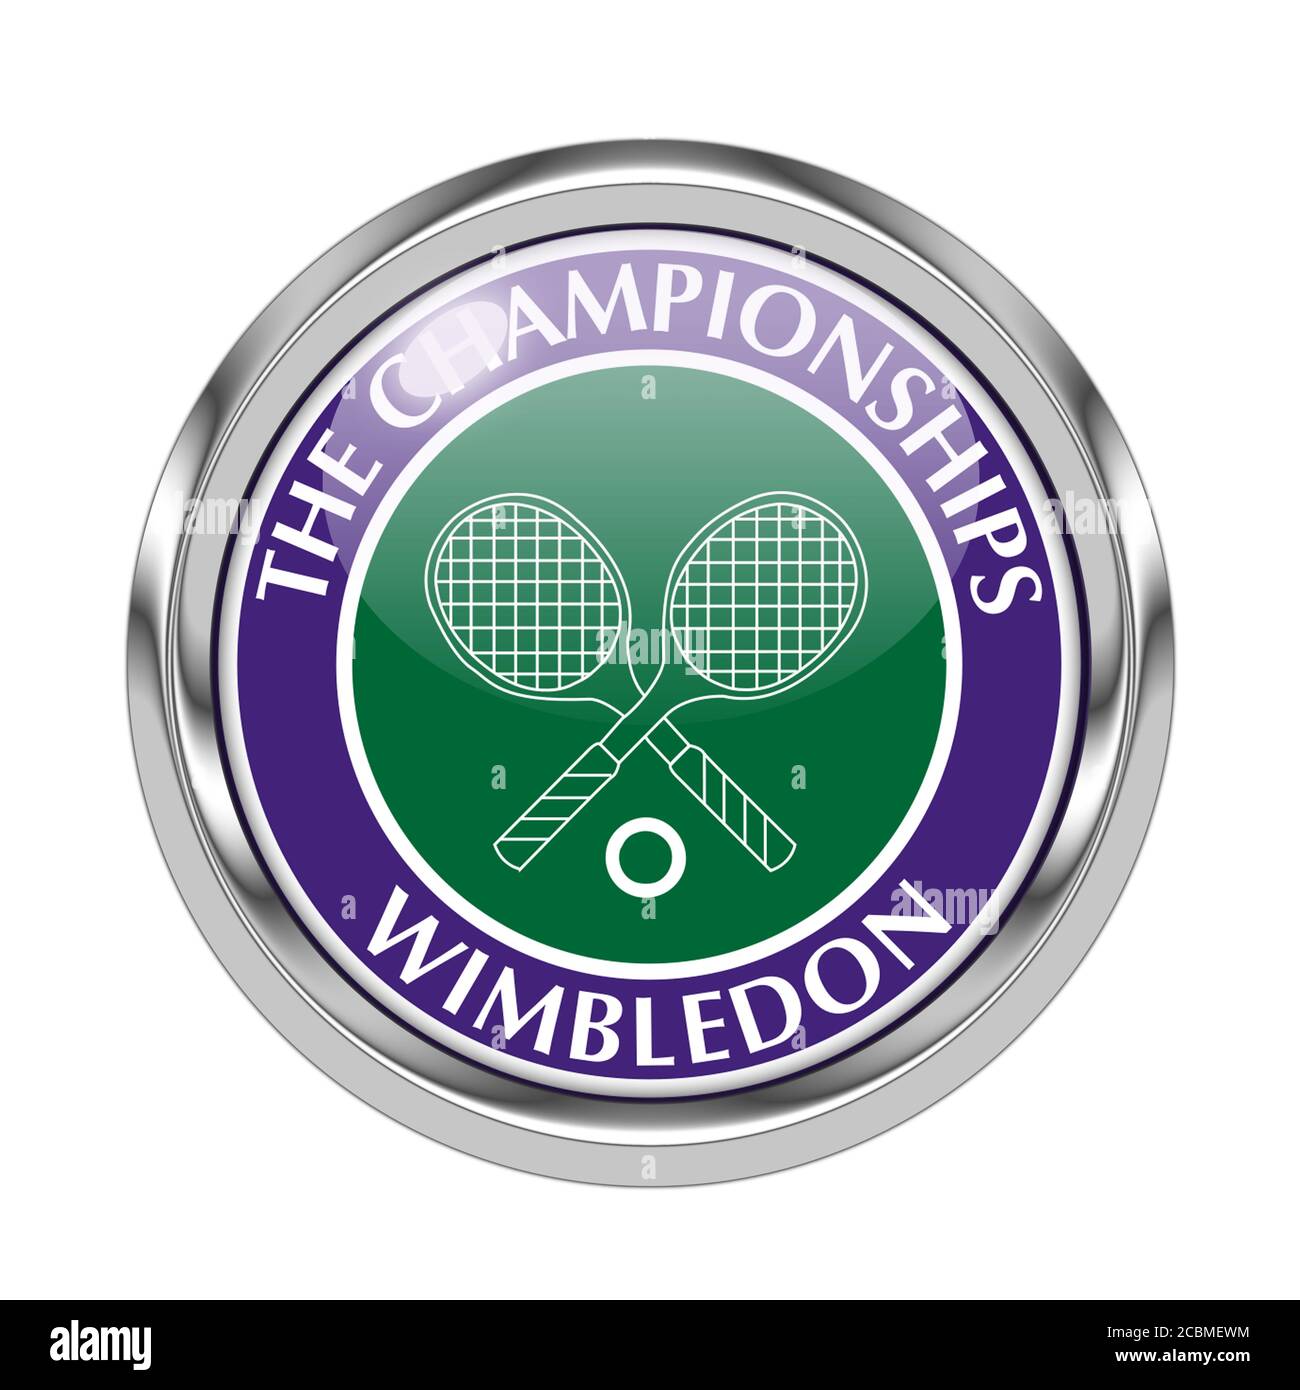 Wimbledon Stock Photo